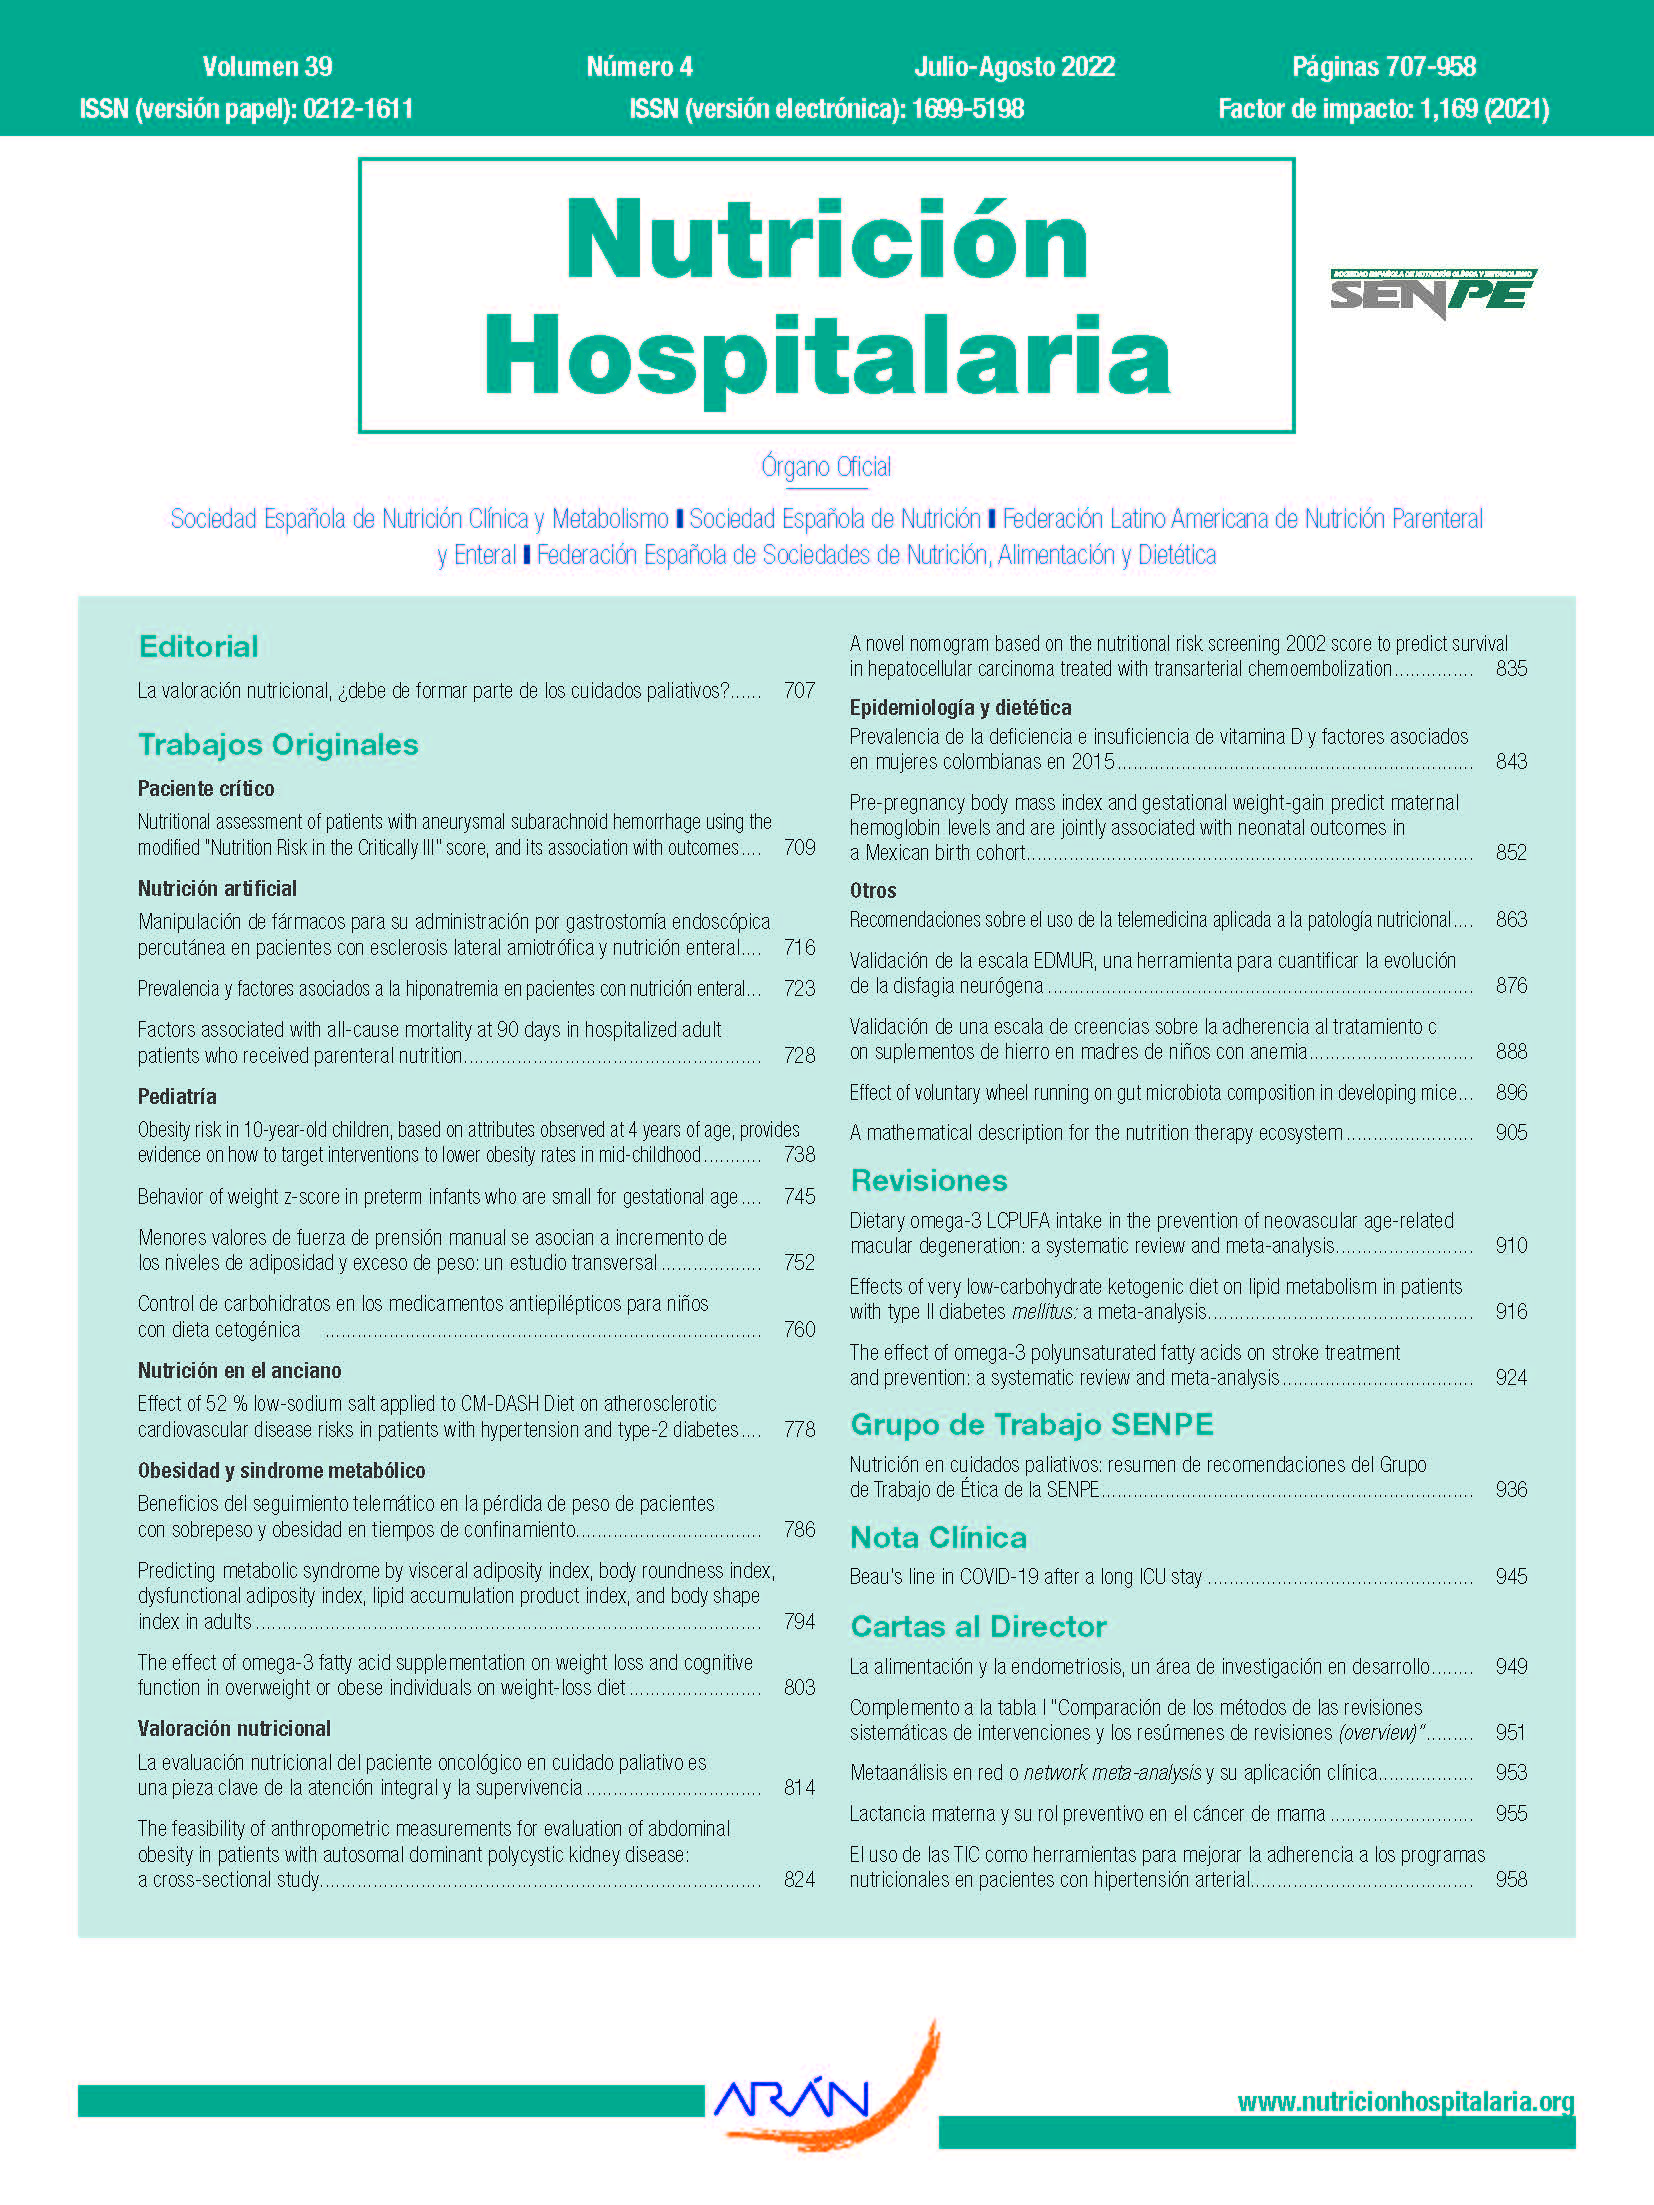 Nutrición Hospitalaria - Arán Ediciones, S.L.